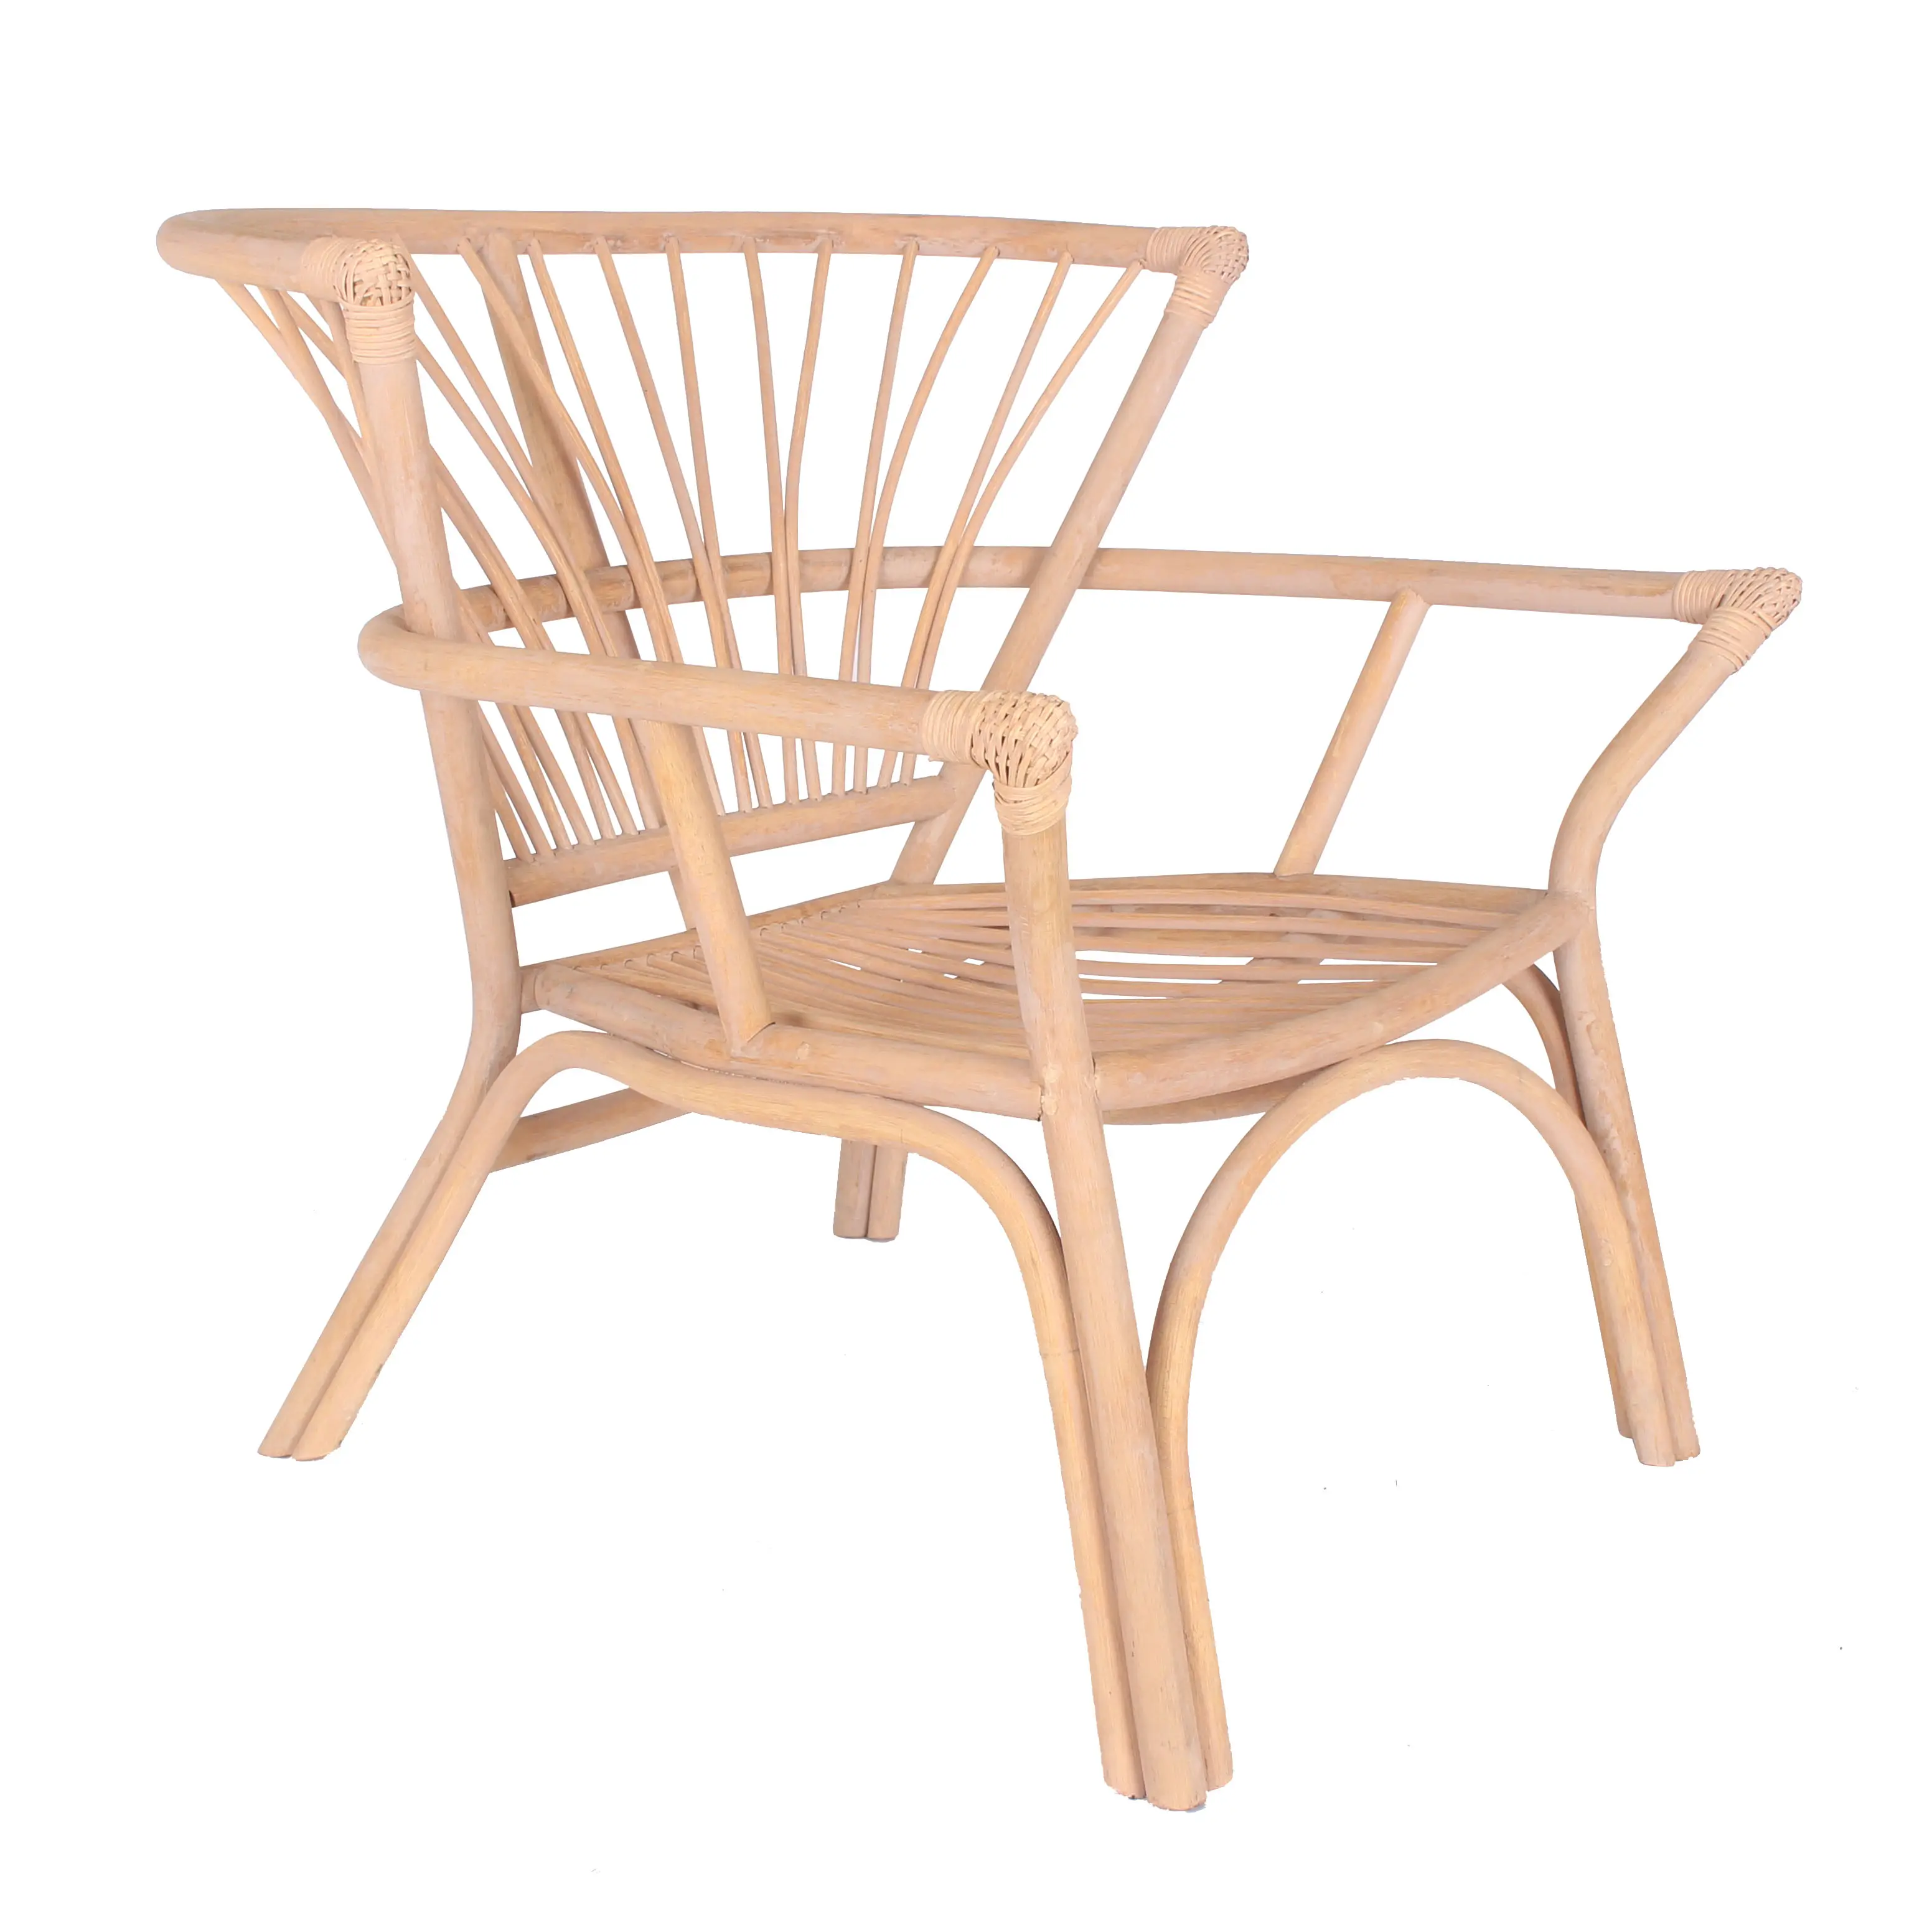 Alto Industrial madera bastón asiento muebles restaurante mimbre Bar taburete silla